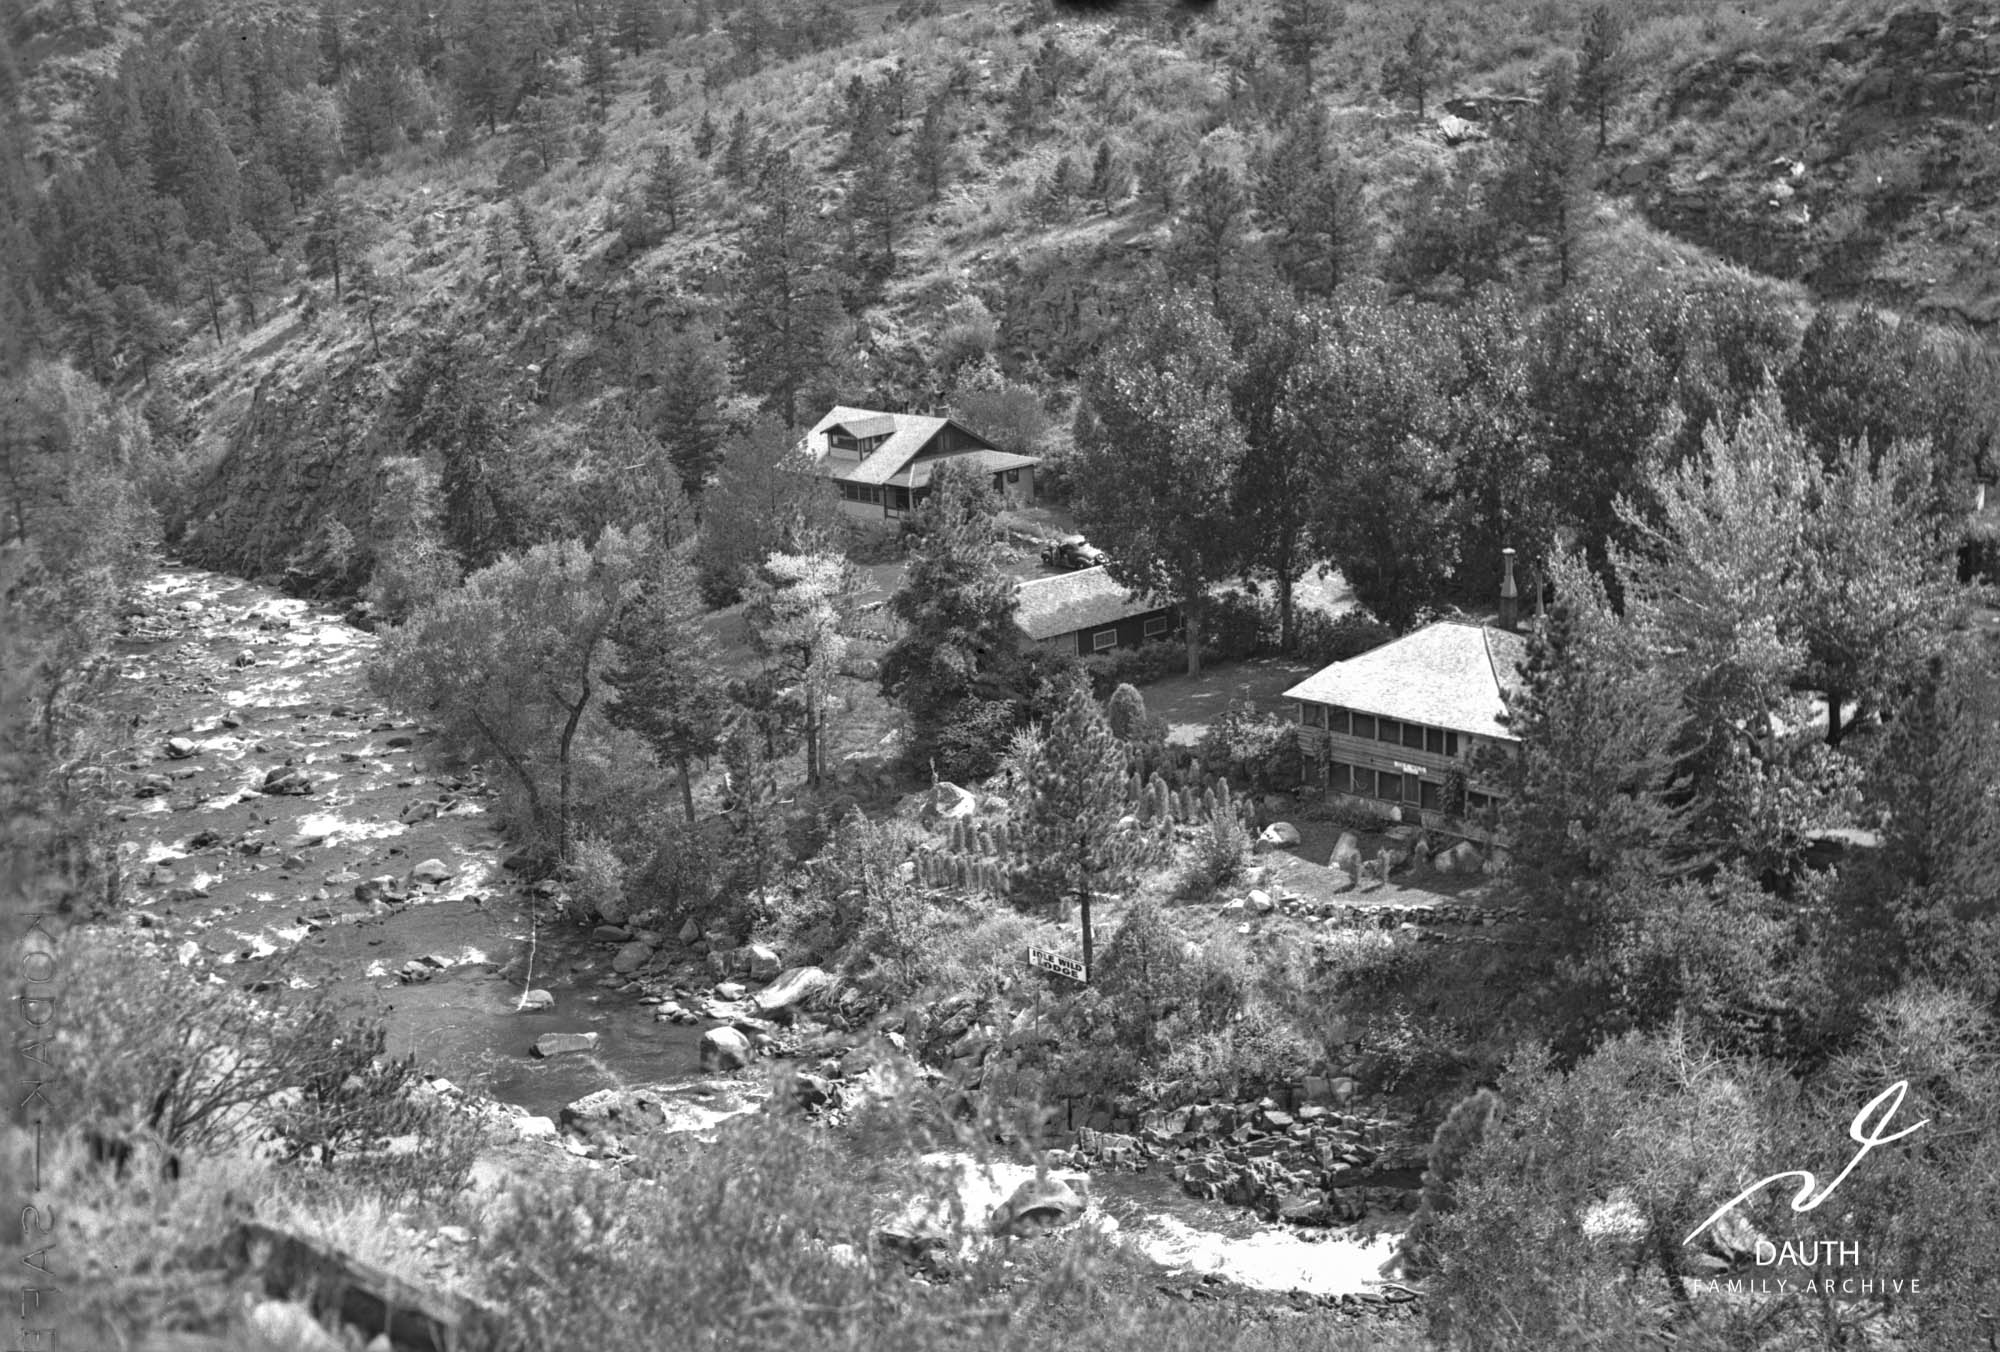 Idlewild Lodge - idlewildlodge.github.io - Circa 1935 - Idlewild - Looking South At Idlewild Lodge, DAMFINO An